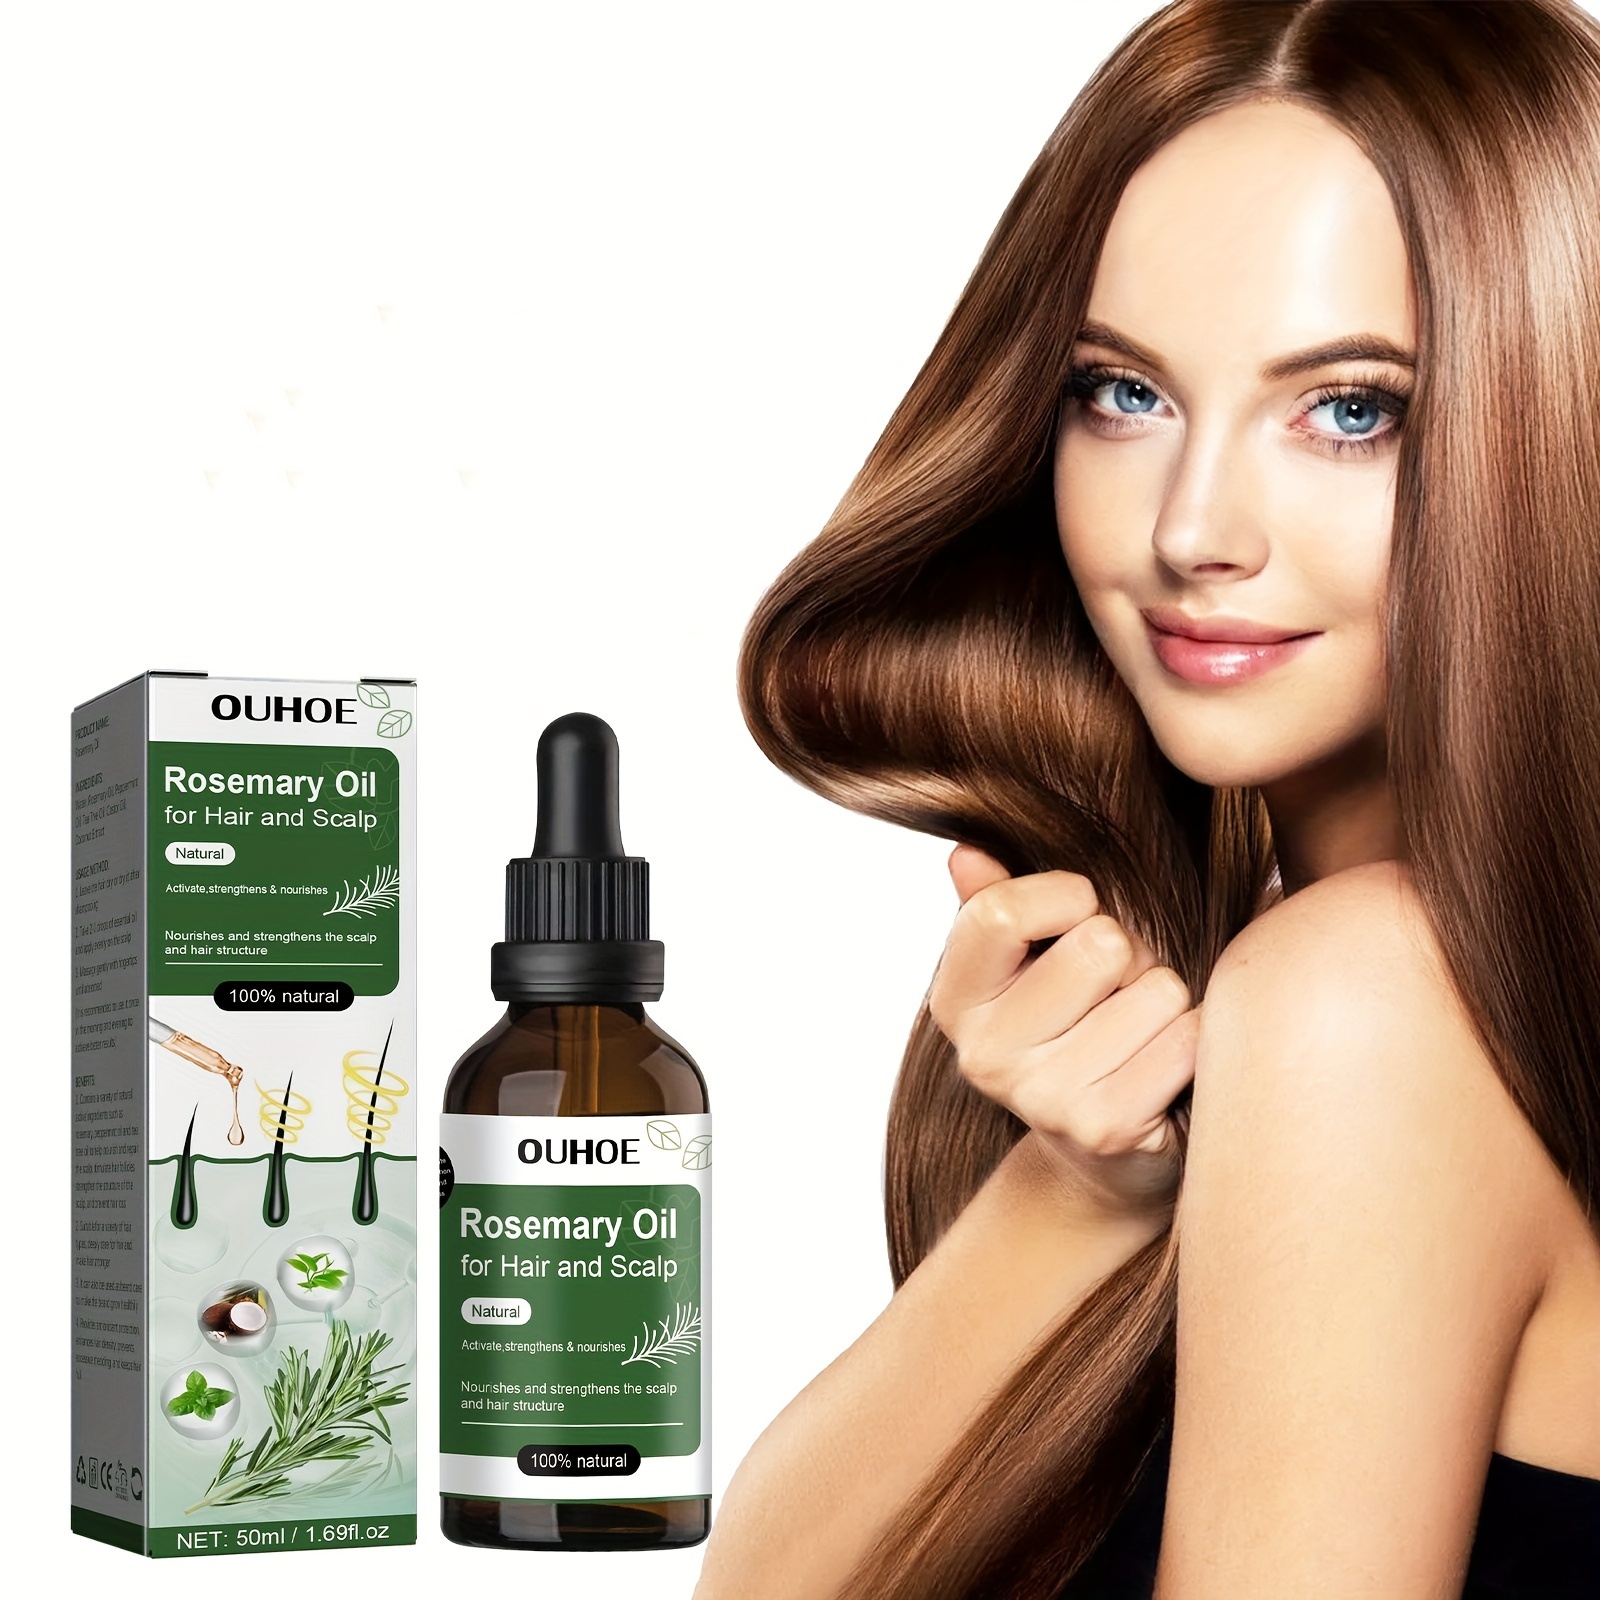 MIELLE Aceite fortalecedor del cuero cabelludo 59ml - Mielle Organics